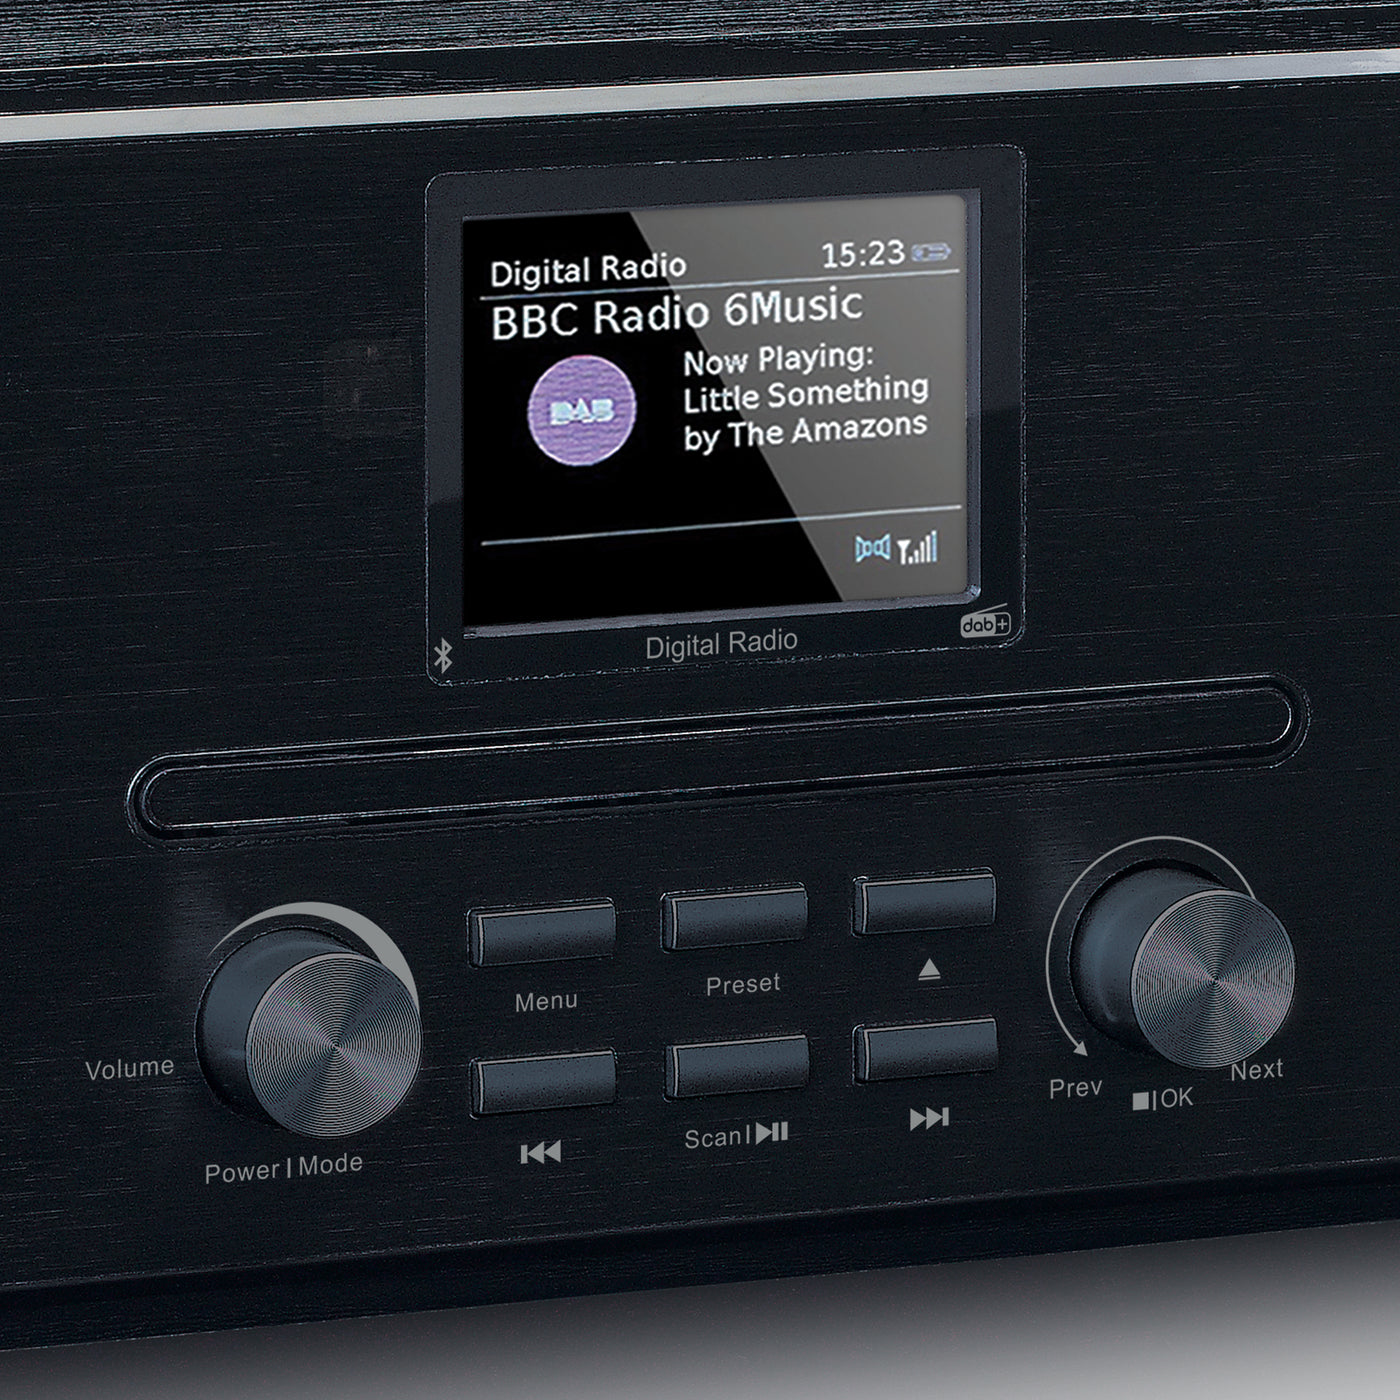 LENCO DAR-061BK - Radio DAB+/FM z odtwarzaczem CD i Bluetooth® - Czarne